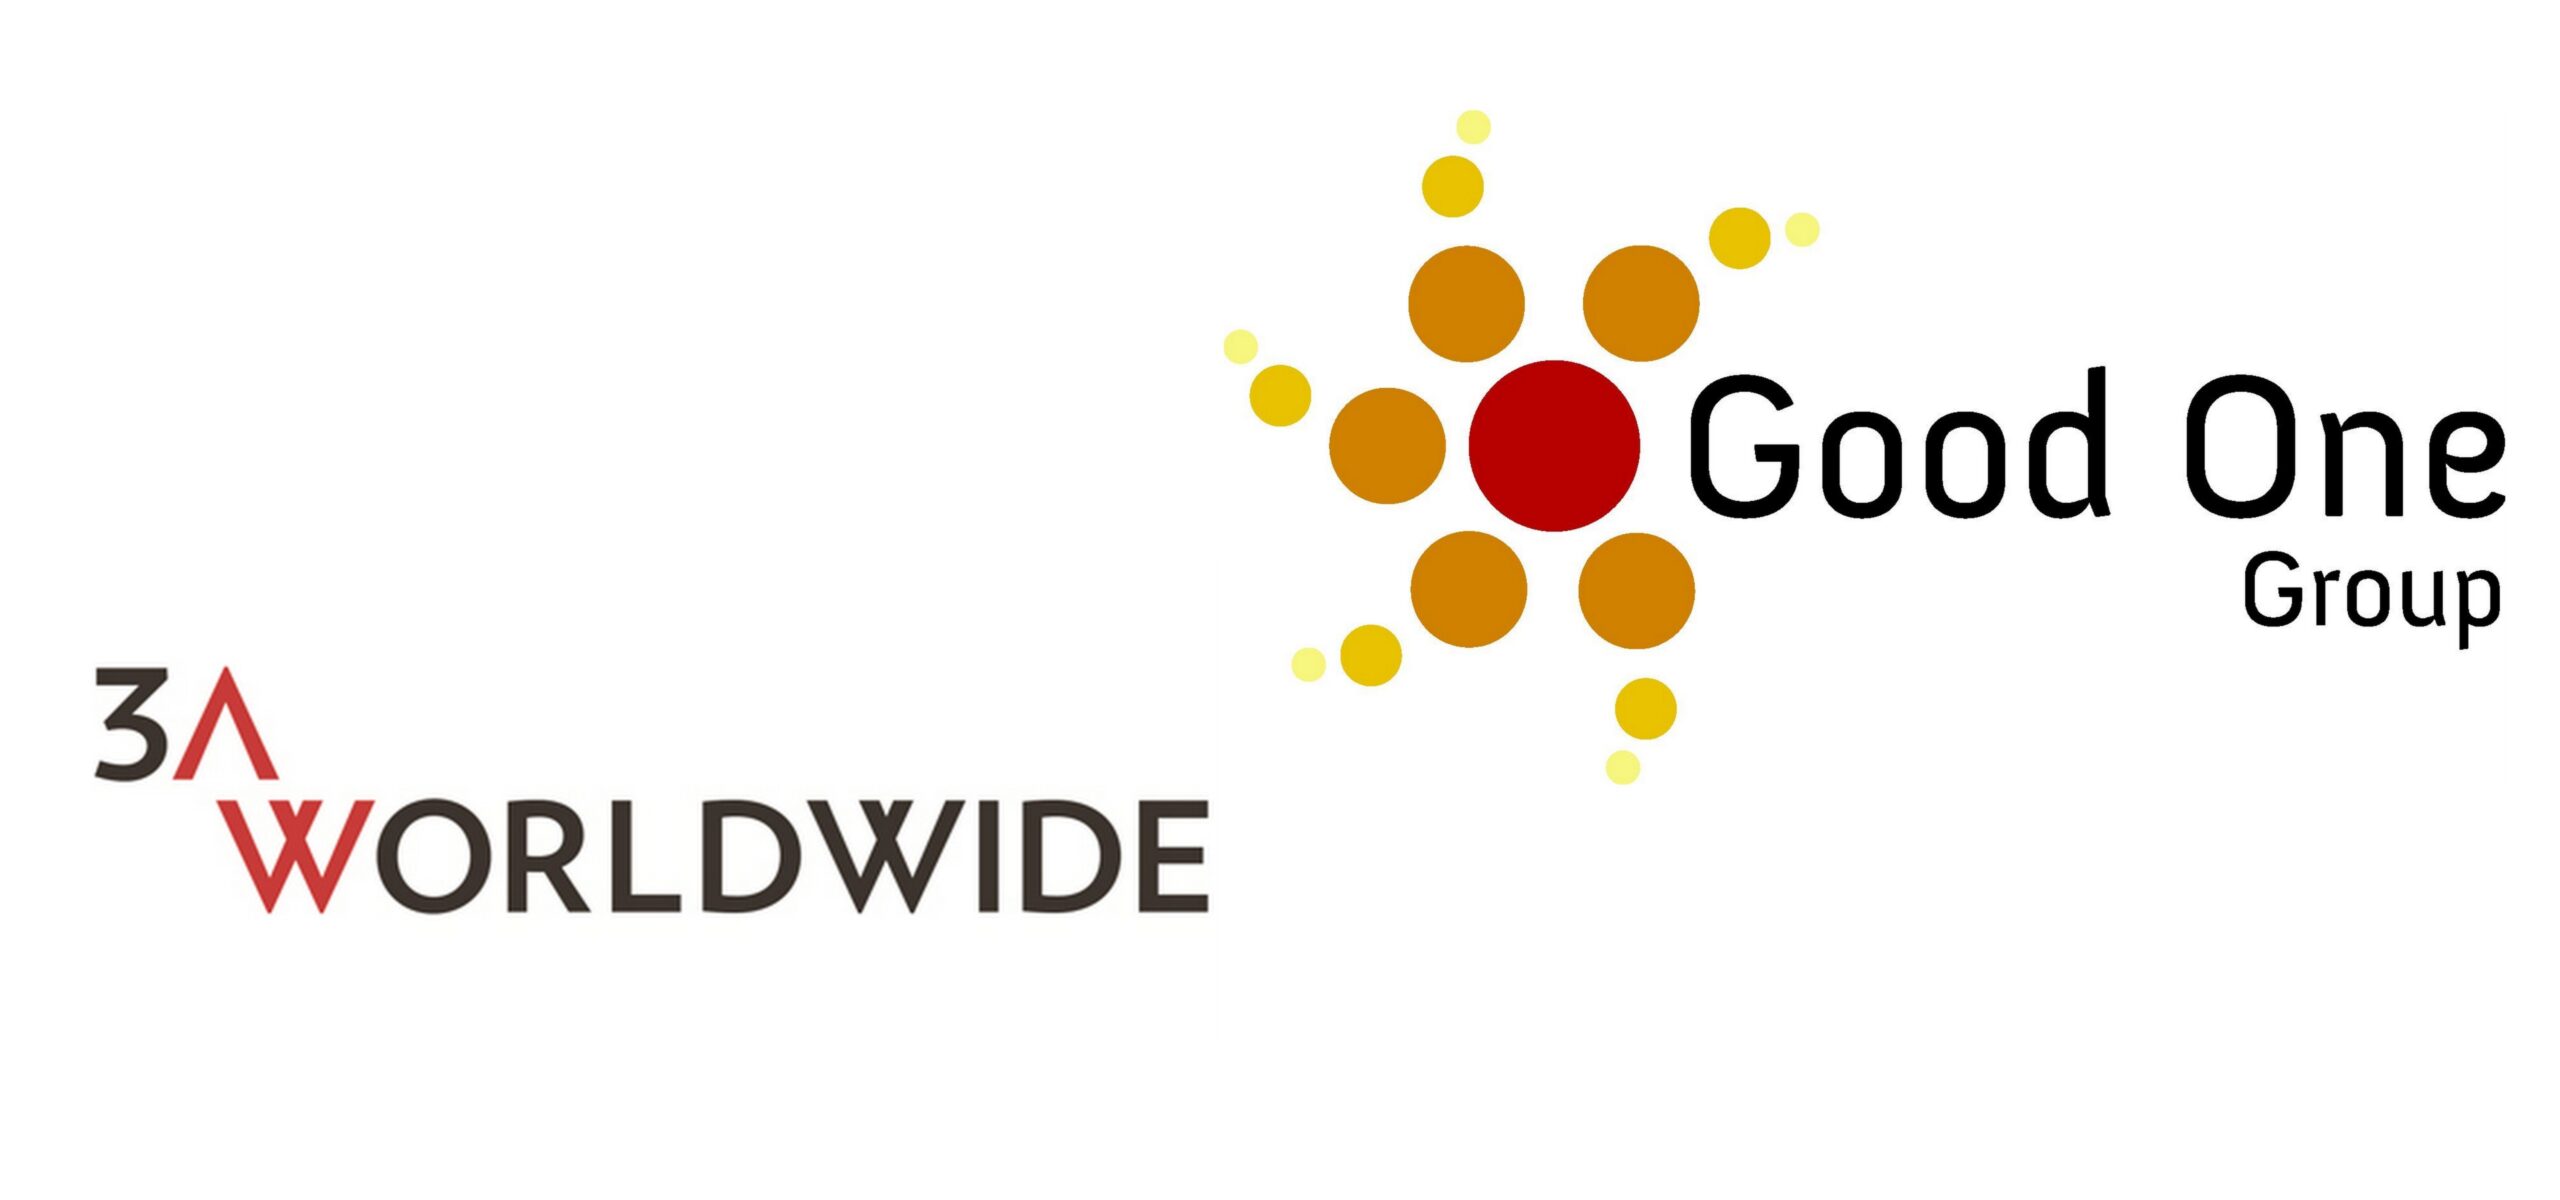 Good One Group dołącza do międzynarodowej sieci 3AWORLDWIDE Cammeo Communications Mediarun Com Good One Group scaled